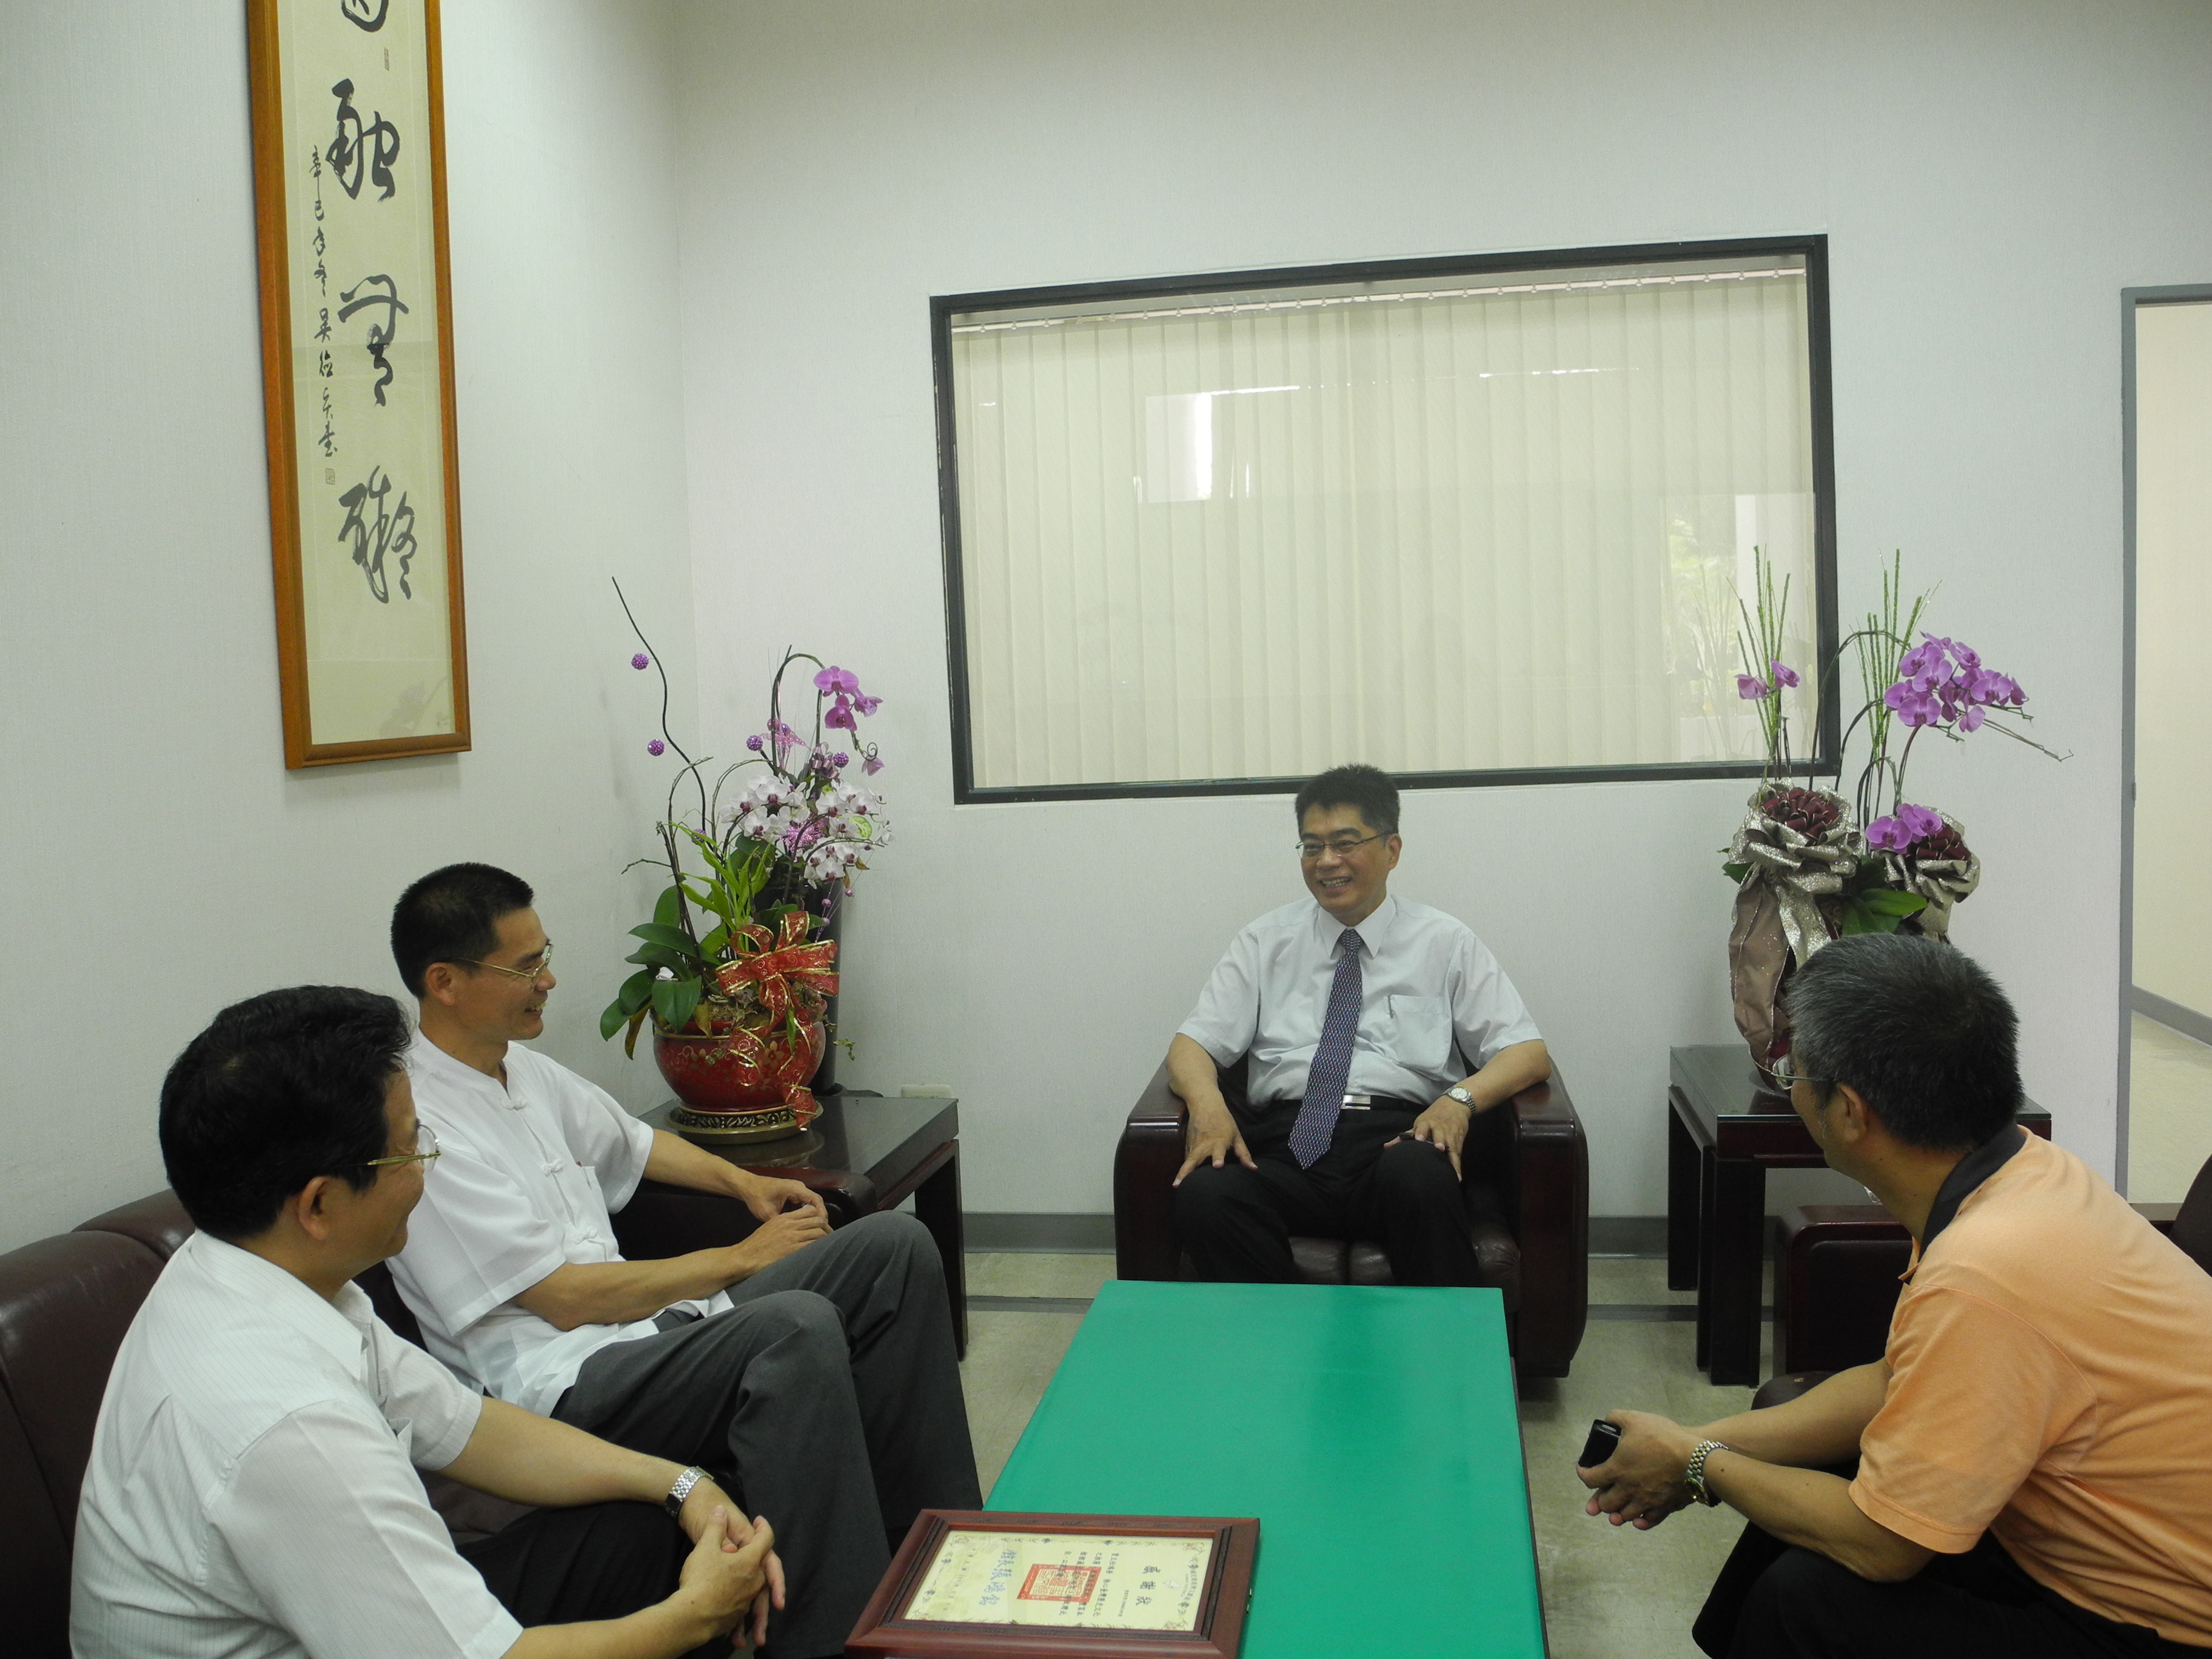 劉澤民副館長拜訪賈鴻奎主任及許明鎮主編致贈感謝狀　